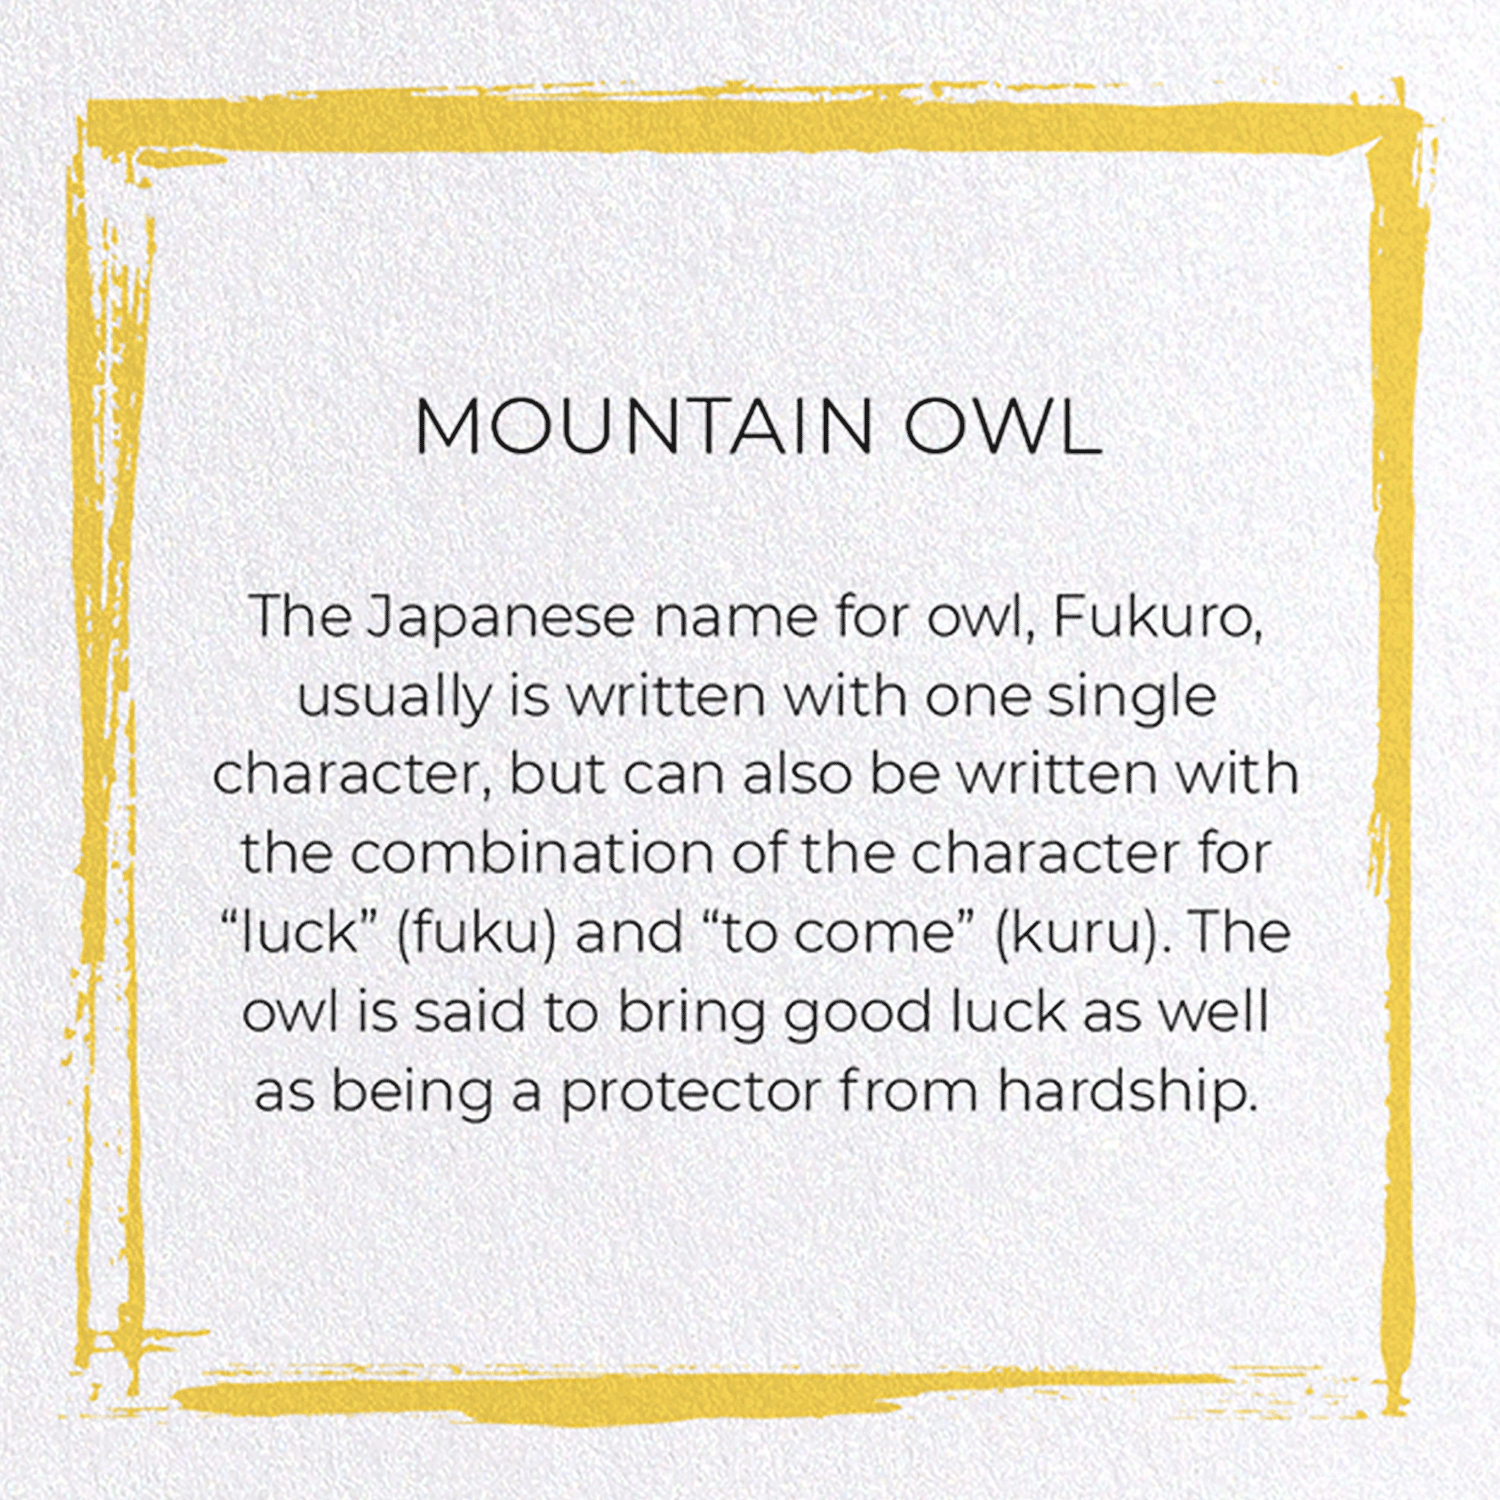 MOUNTAIN OWL